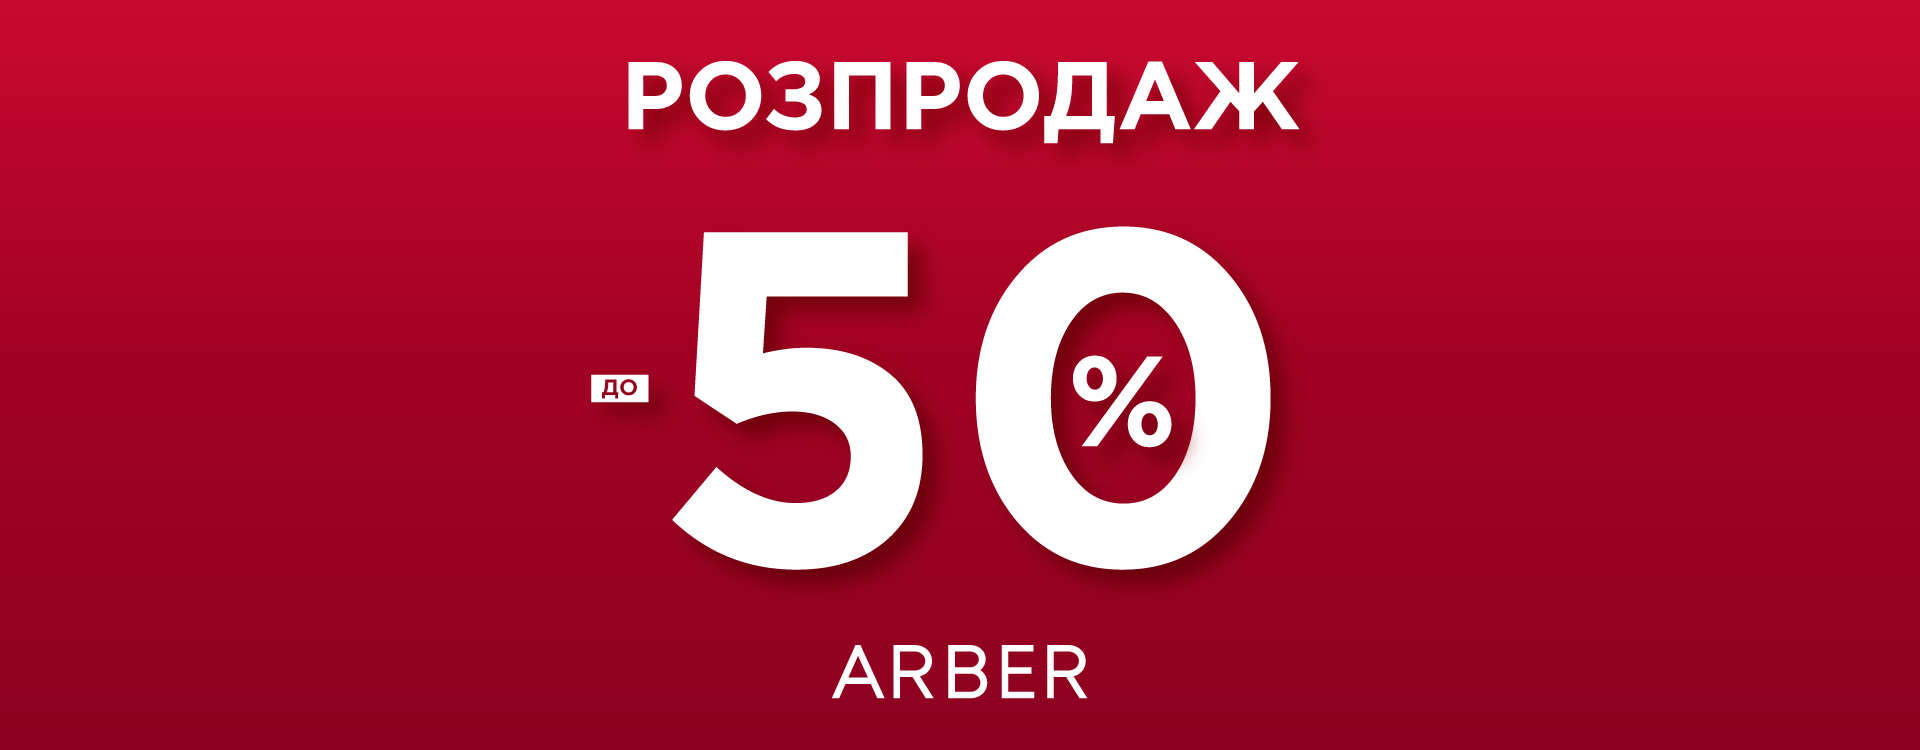 Праздничные скидки до 50% в Arber